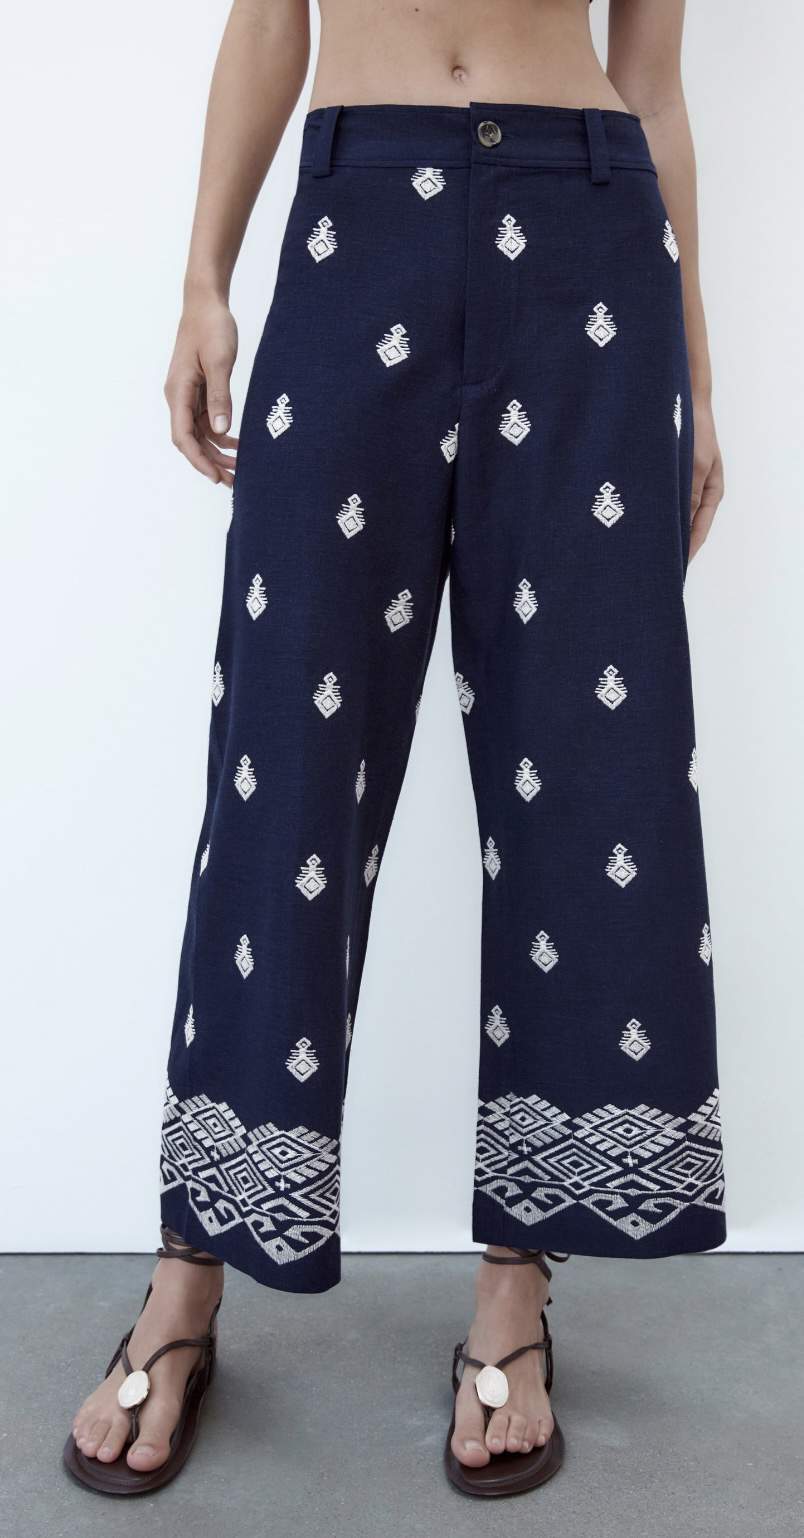 Pantalones culotte estampados de Zara